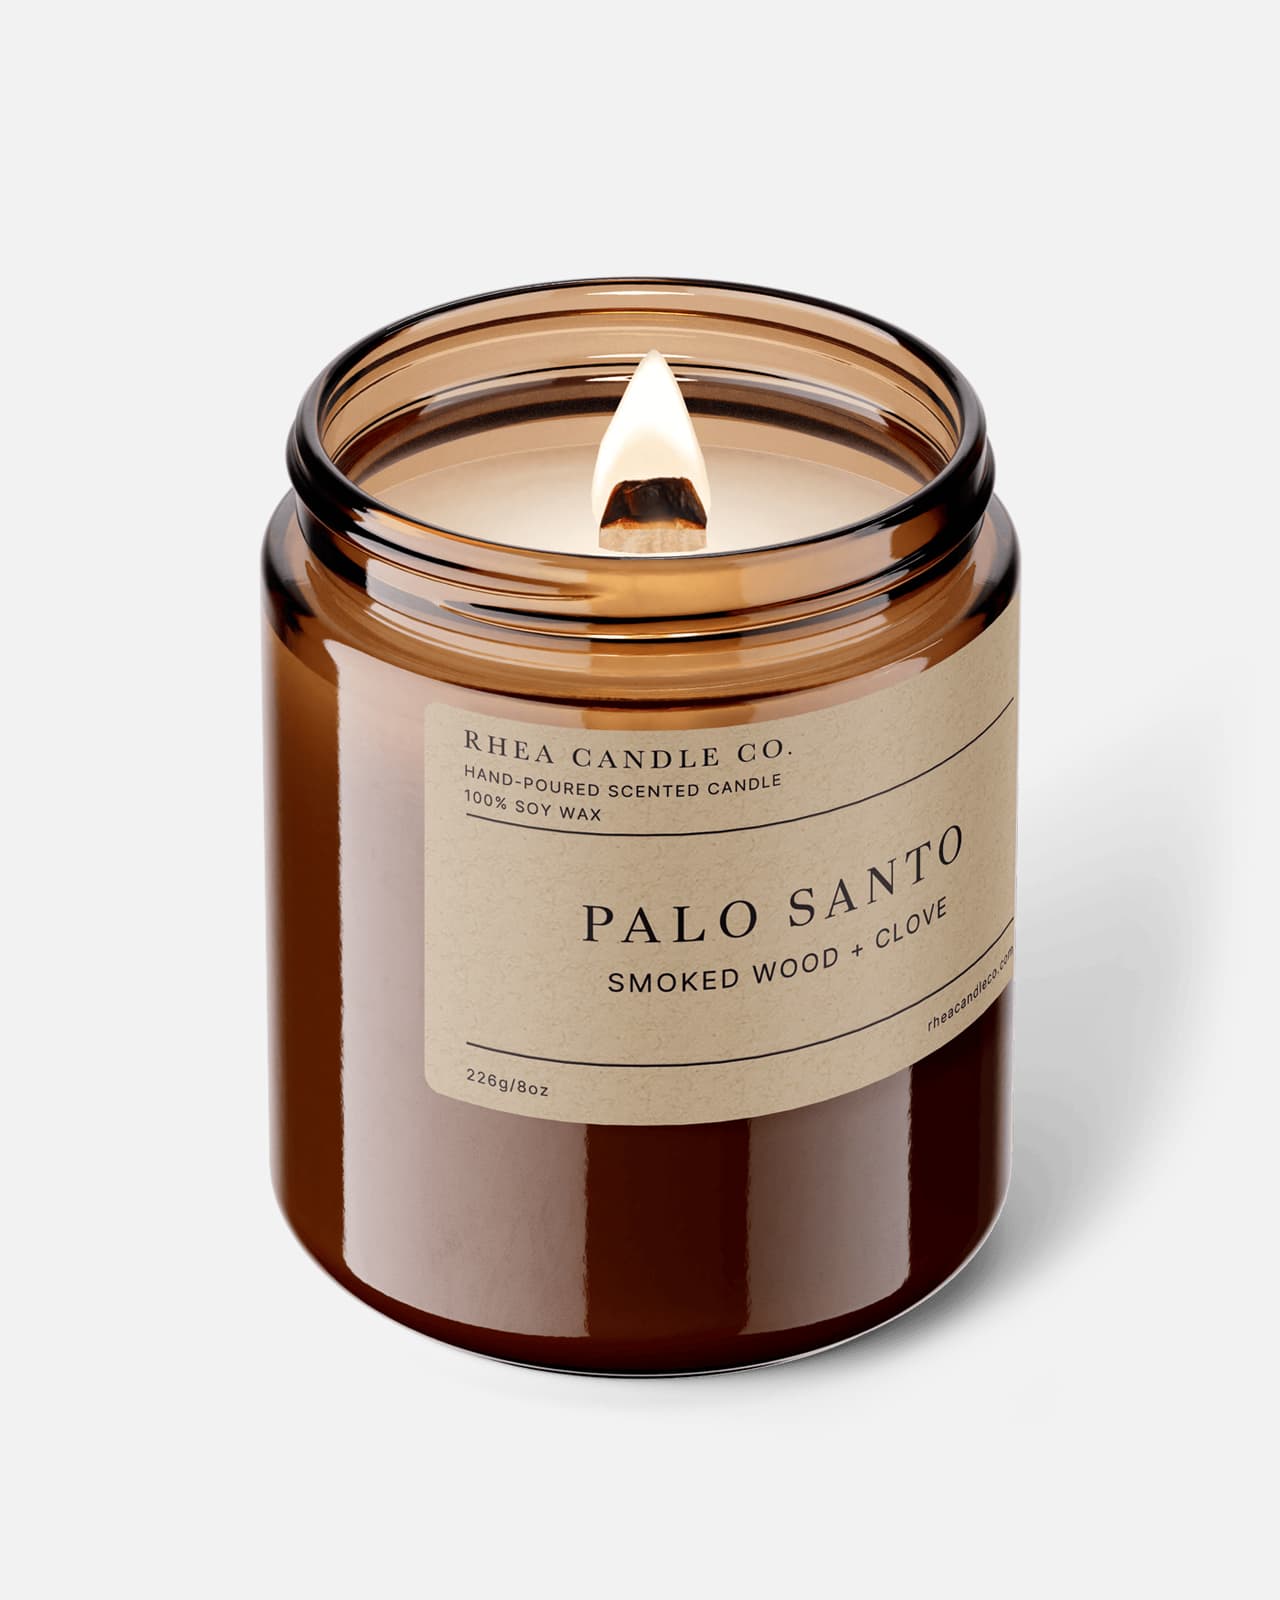 Palo Santo Candle | Smoked Wood + Clove - Rhea Candle Co.